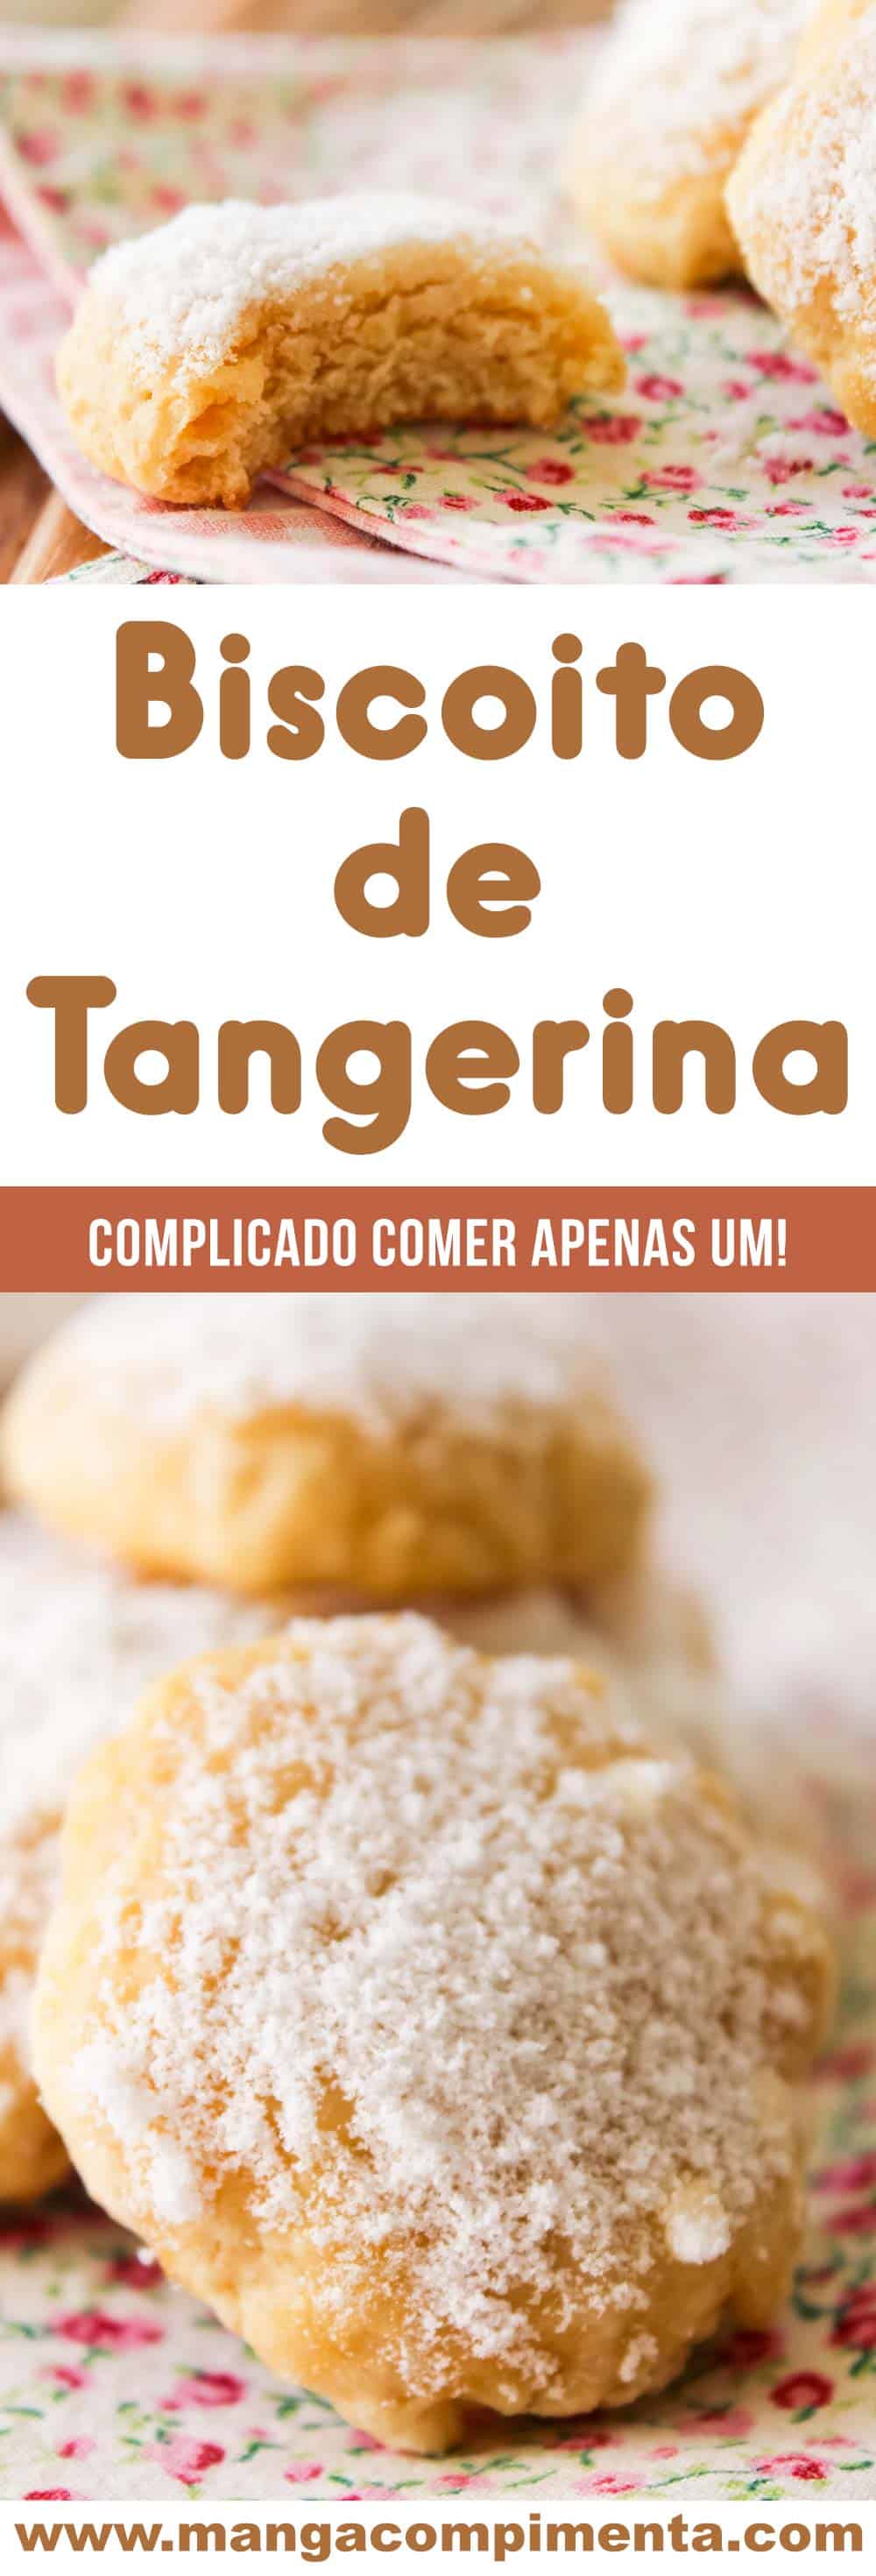 Biscoitos de Tangerina - um docinho para alegrar a vida em dias frios!